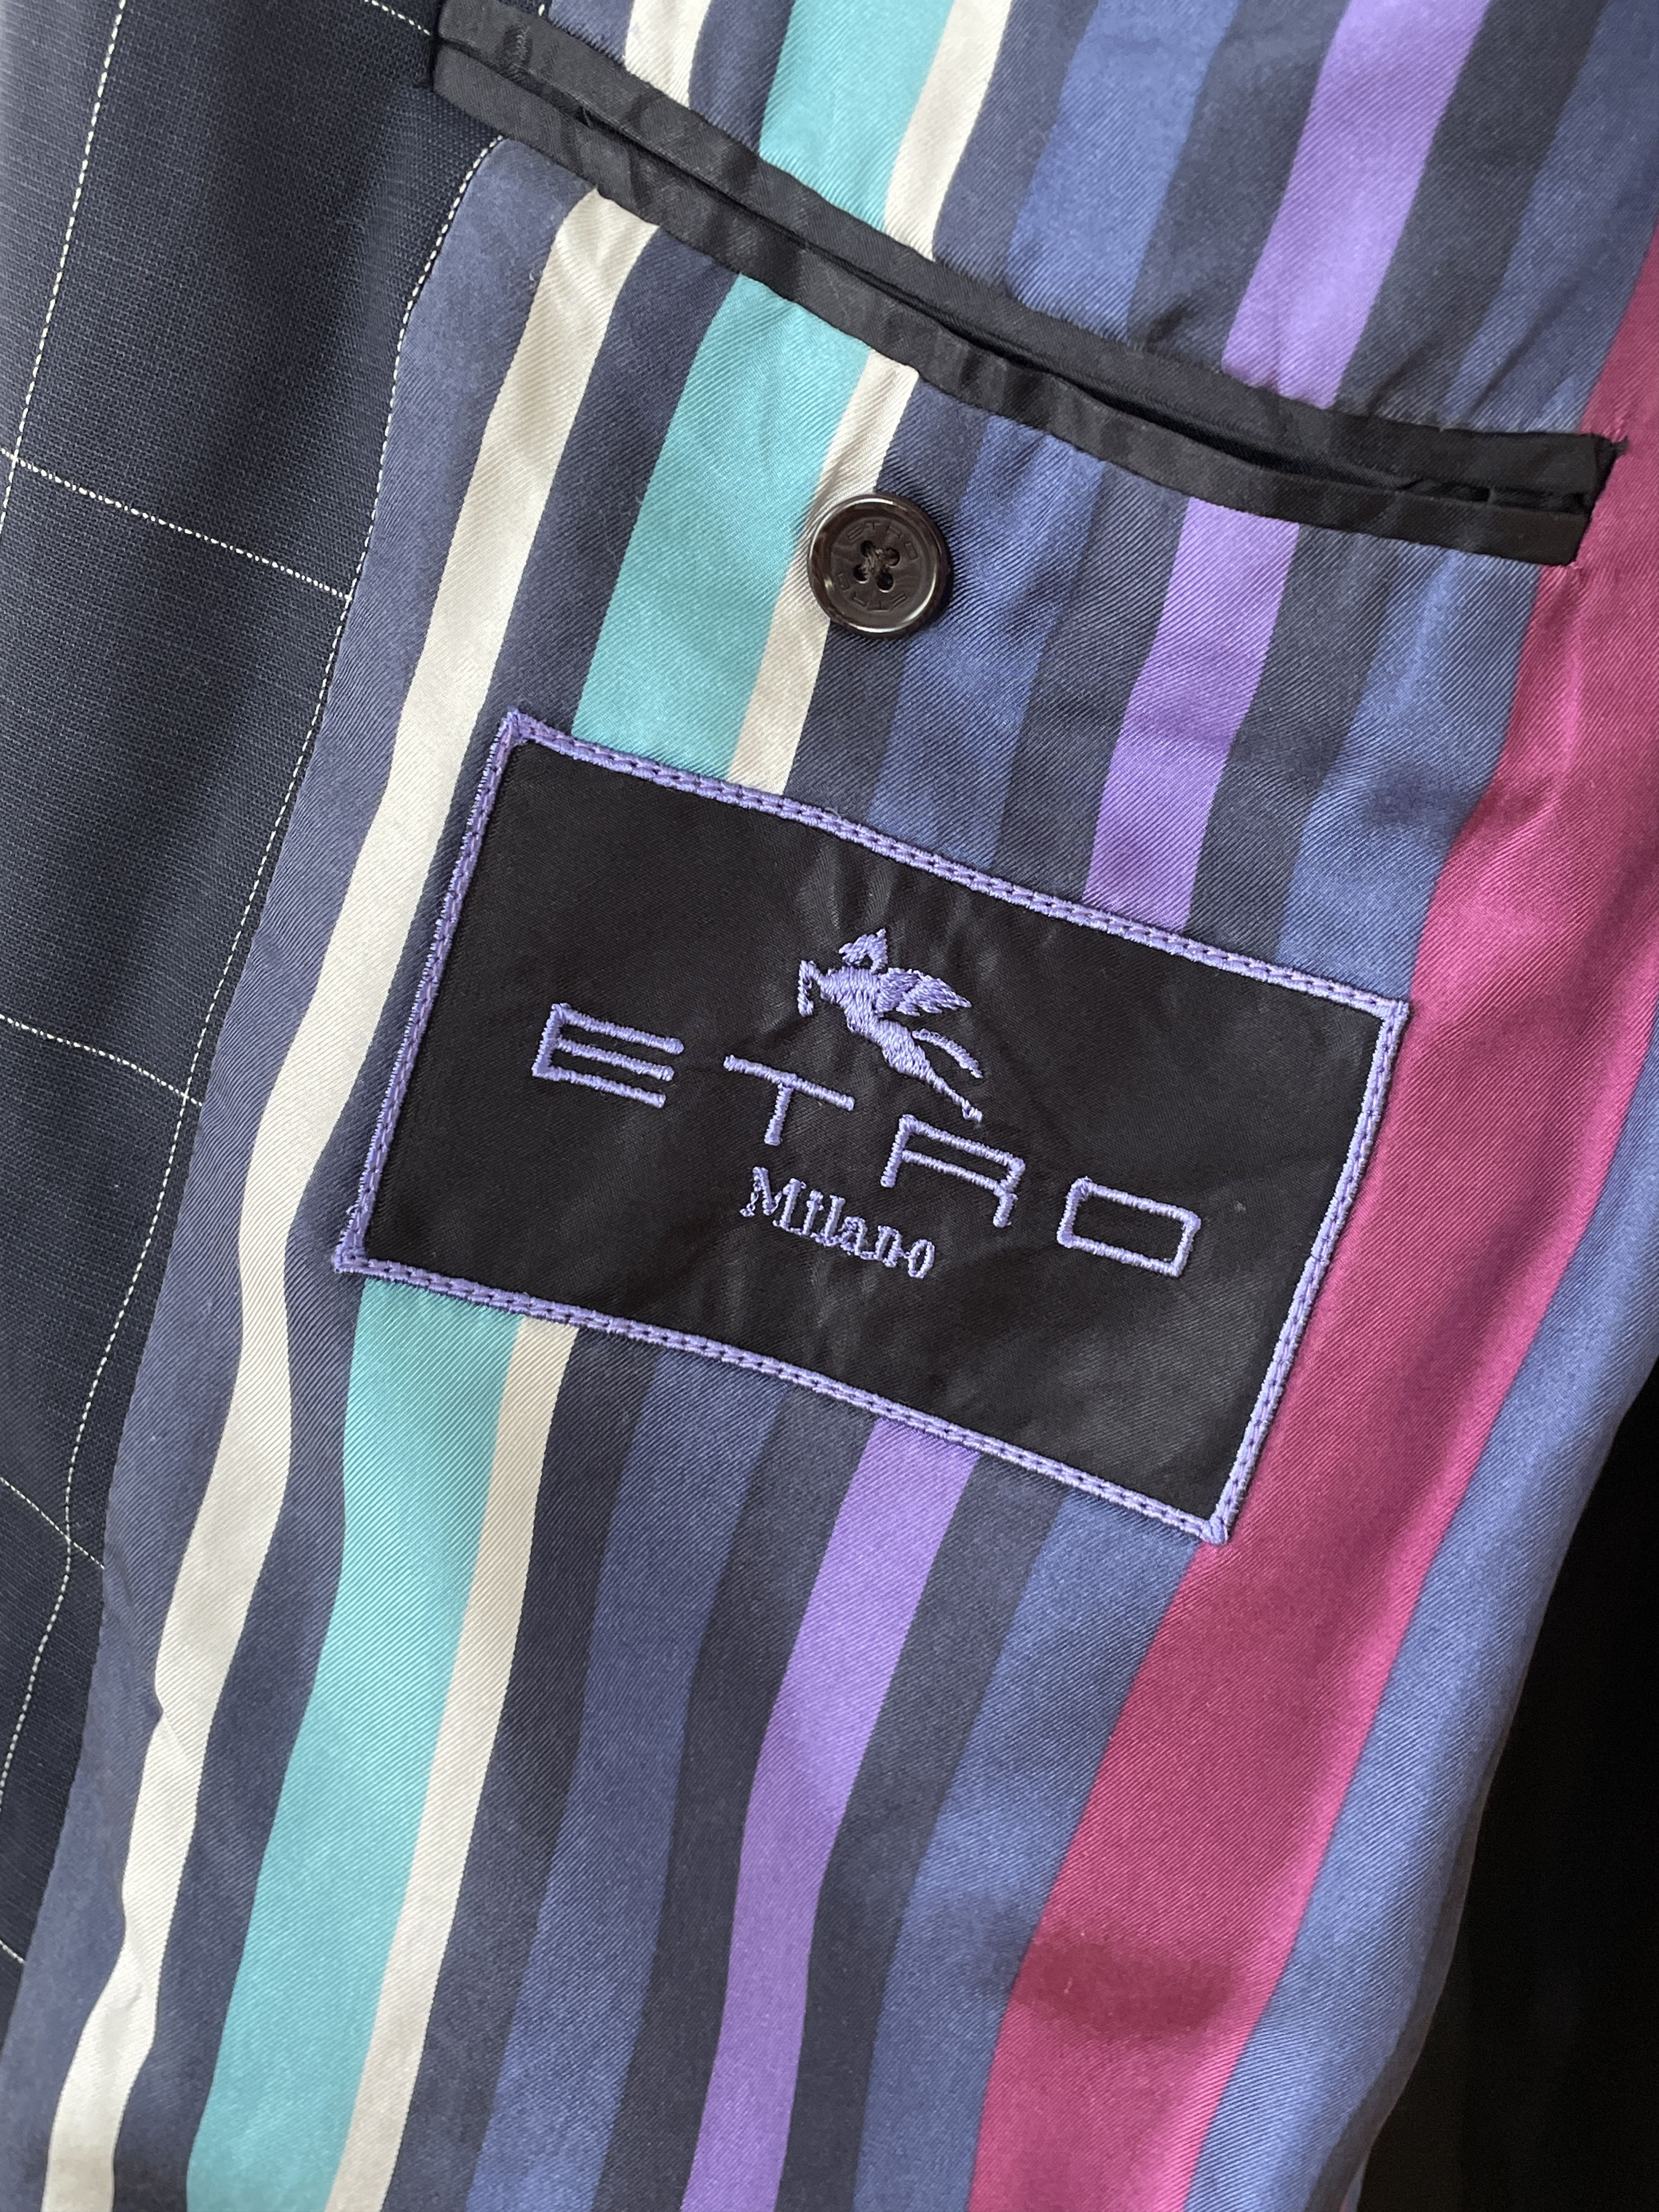 Etro ETRO Jacket Coat Blazer Trousers Suit Plaid Wool A7923 Size 40R - 2 Preview